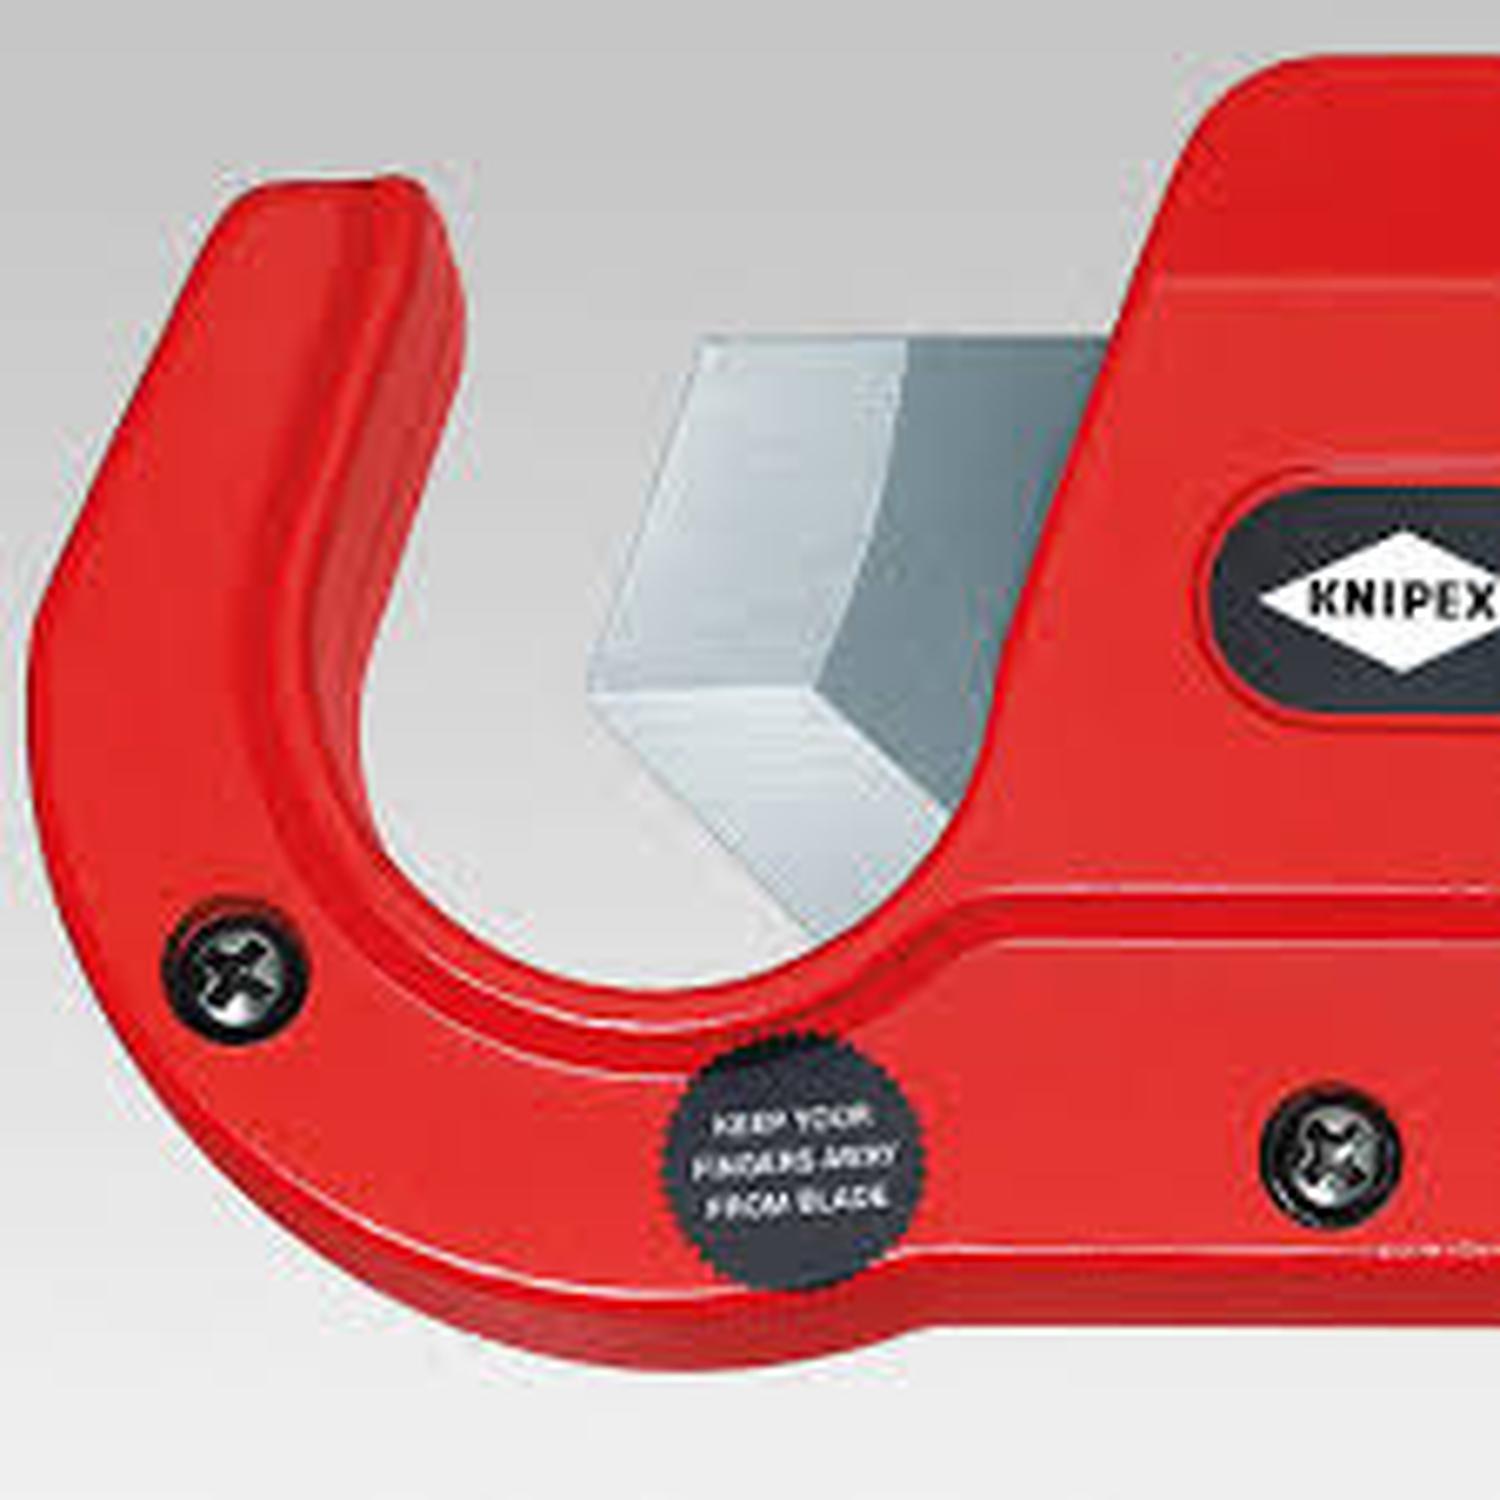 KNIPEX 94 10 185 Pinza corta tubo de plastico max 35mm